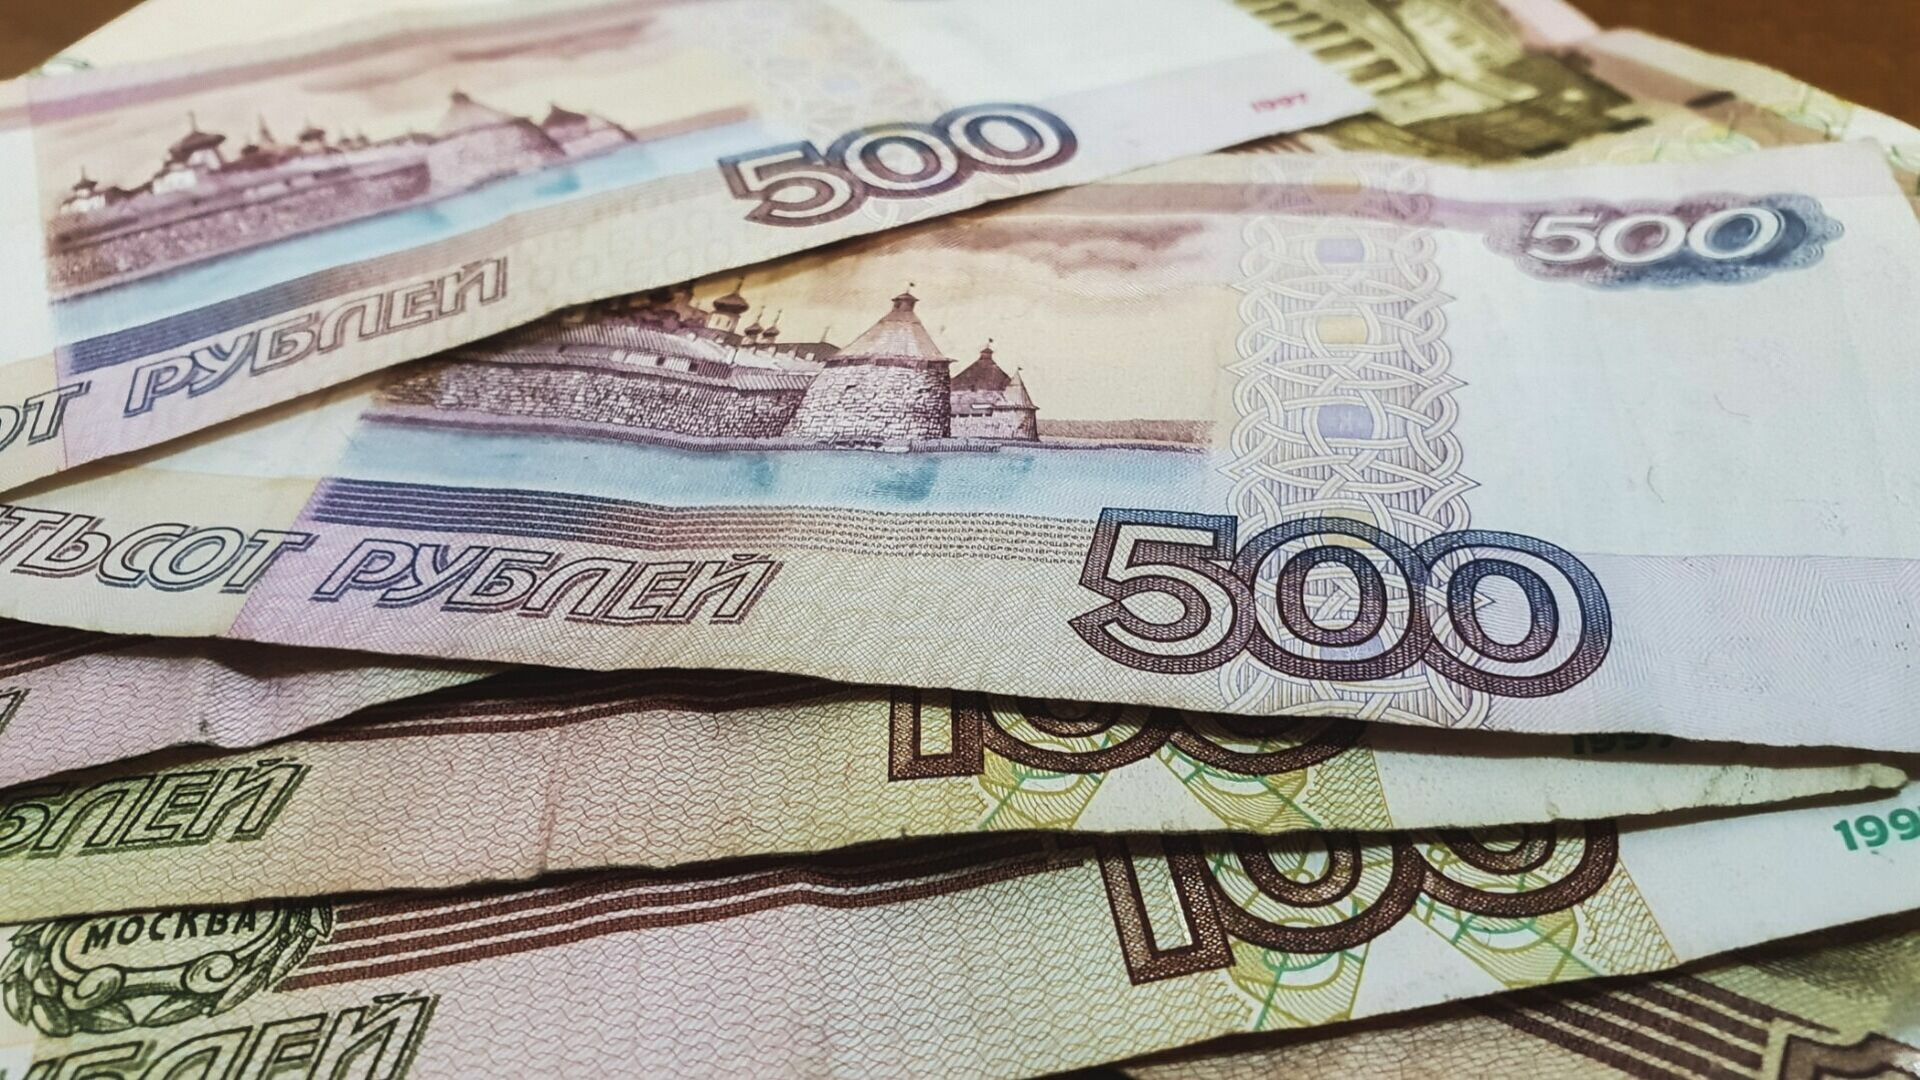 Врачи и менеджеры стали самыми дорогими работниками в Волгограде